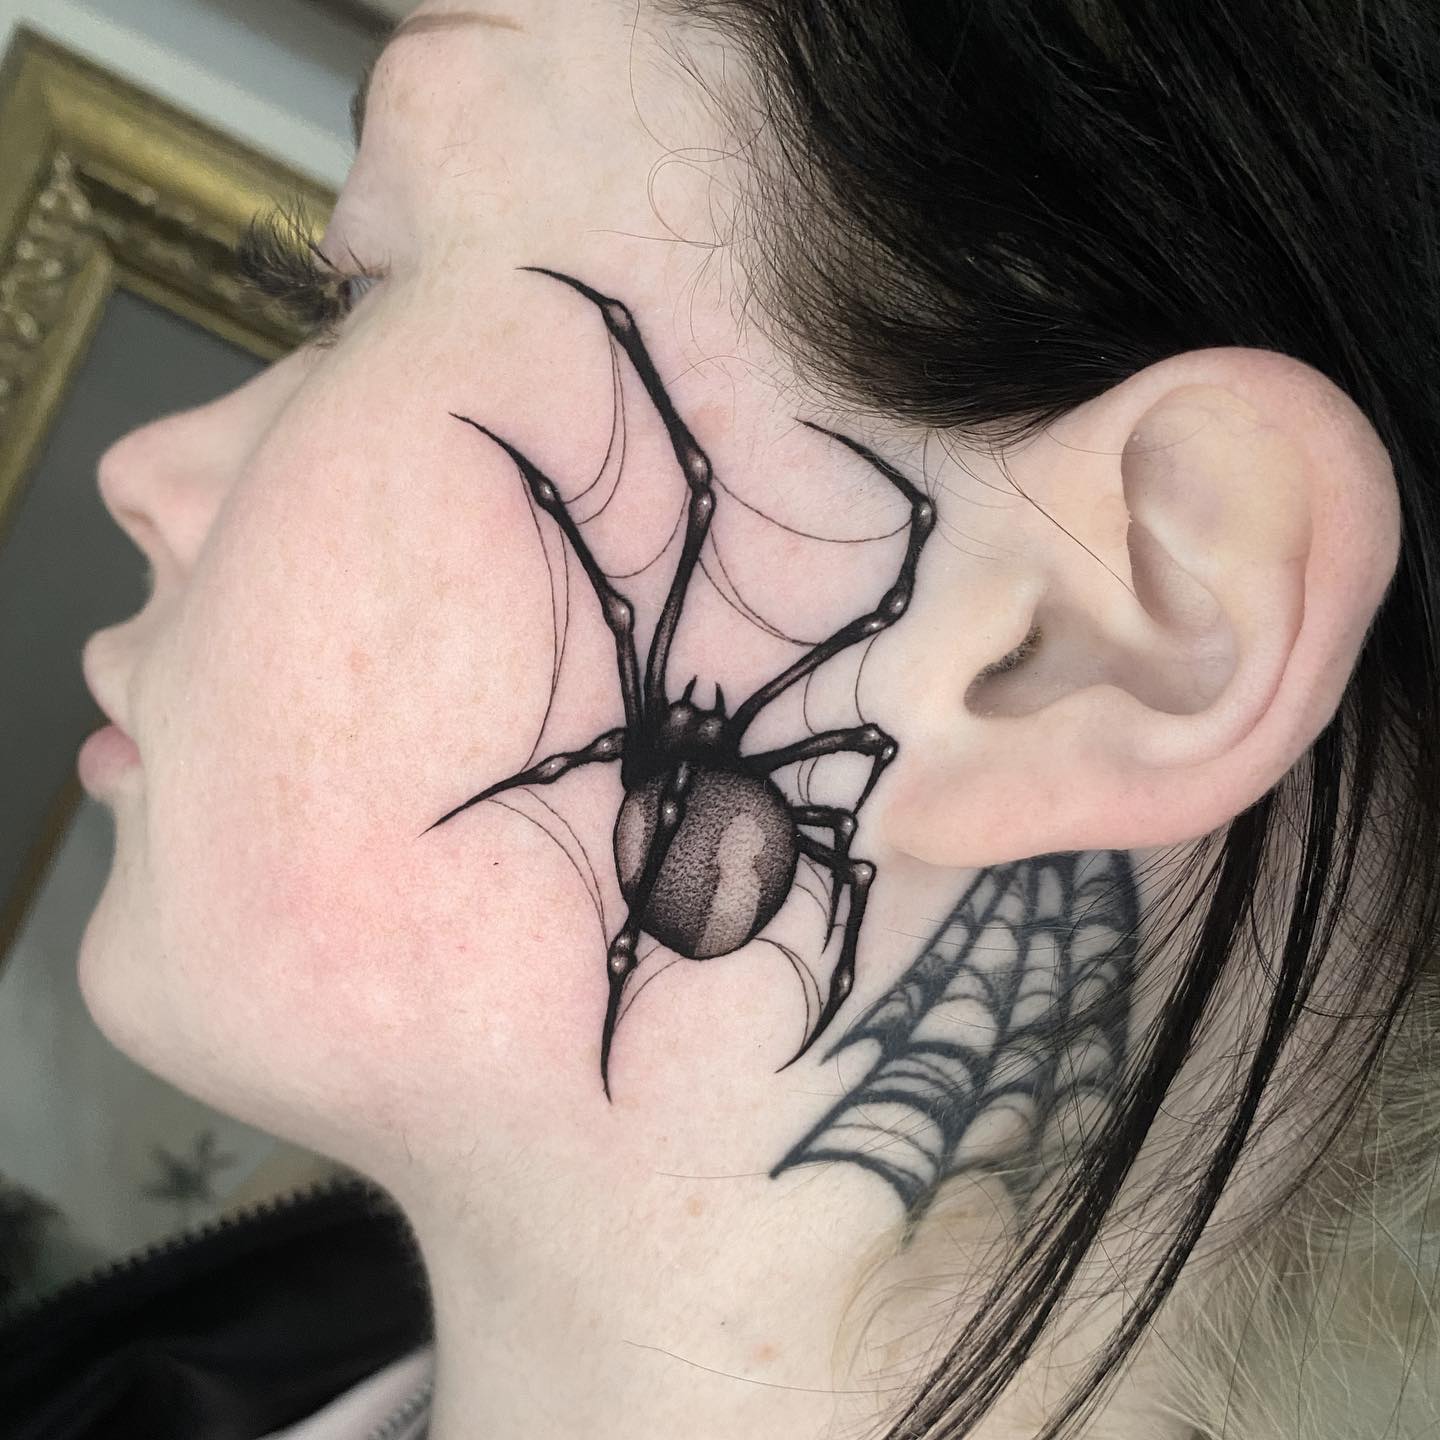 Tatuaje de araña en la cara.